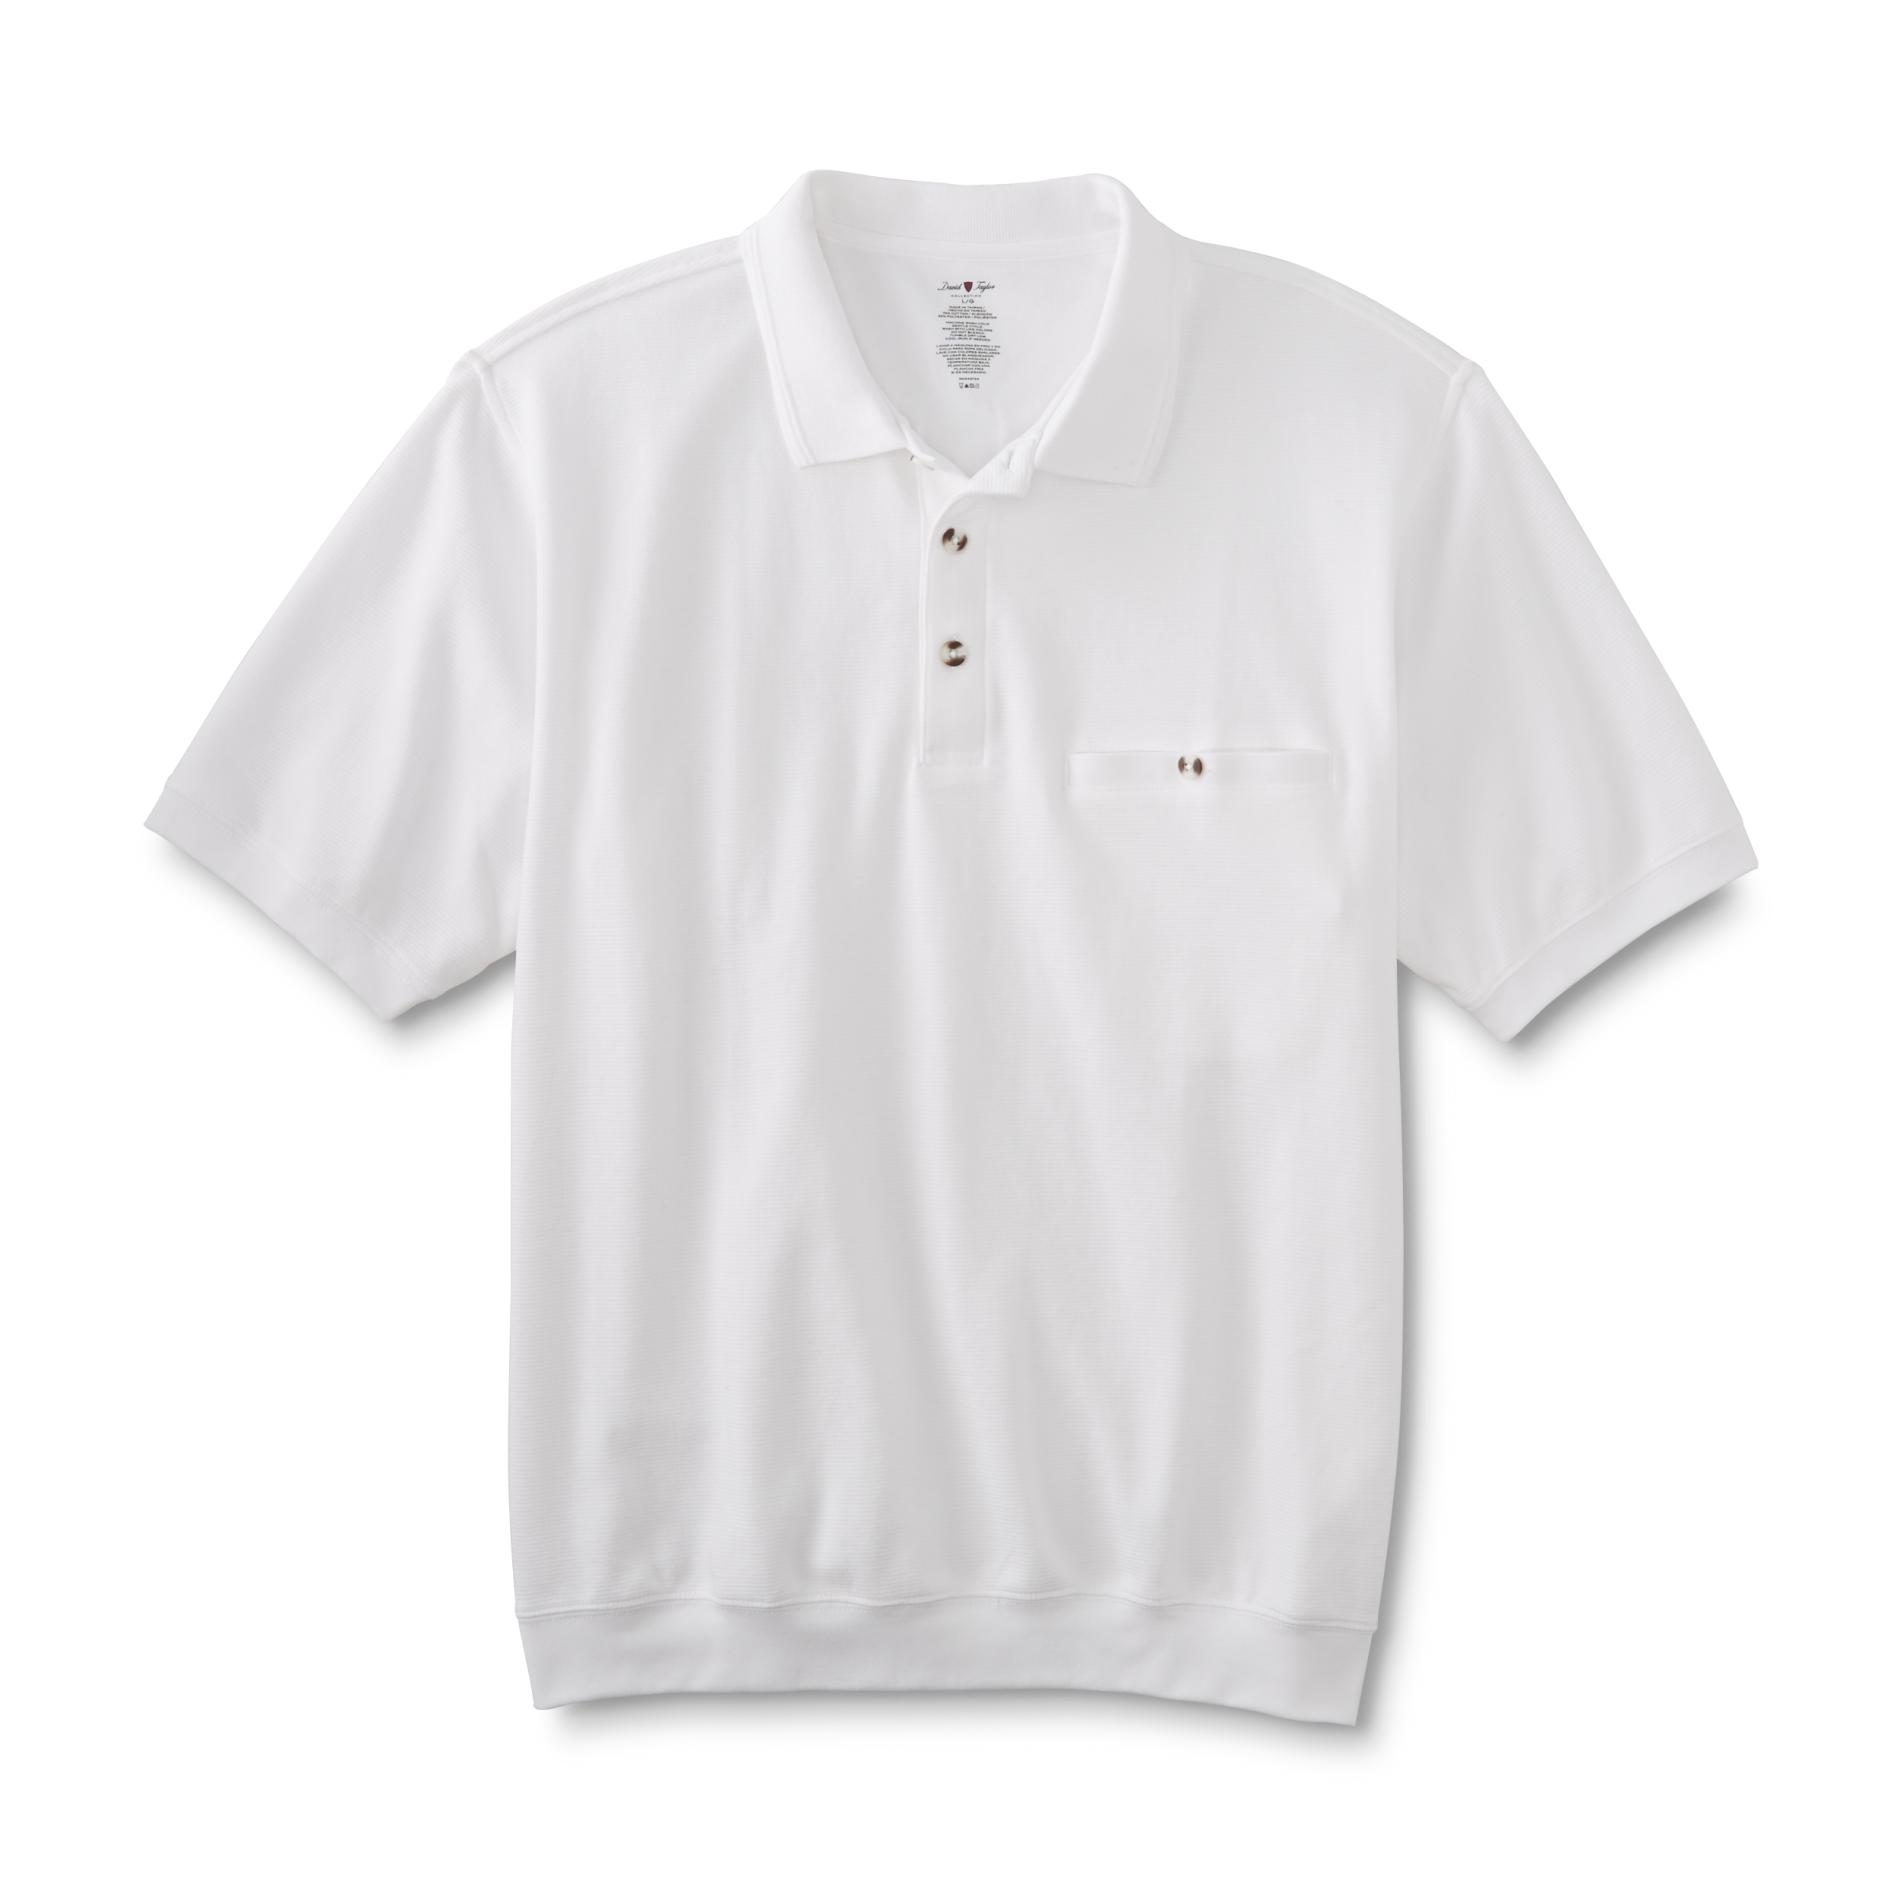 David Taylor Collection Men's Polo Shirt